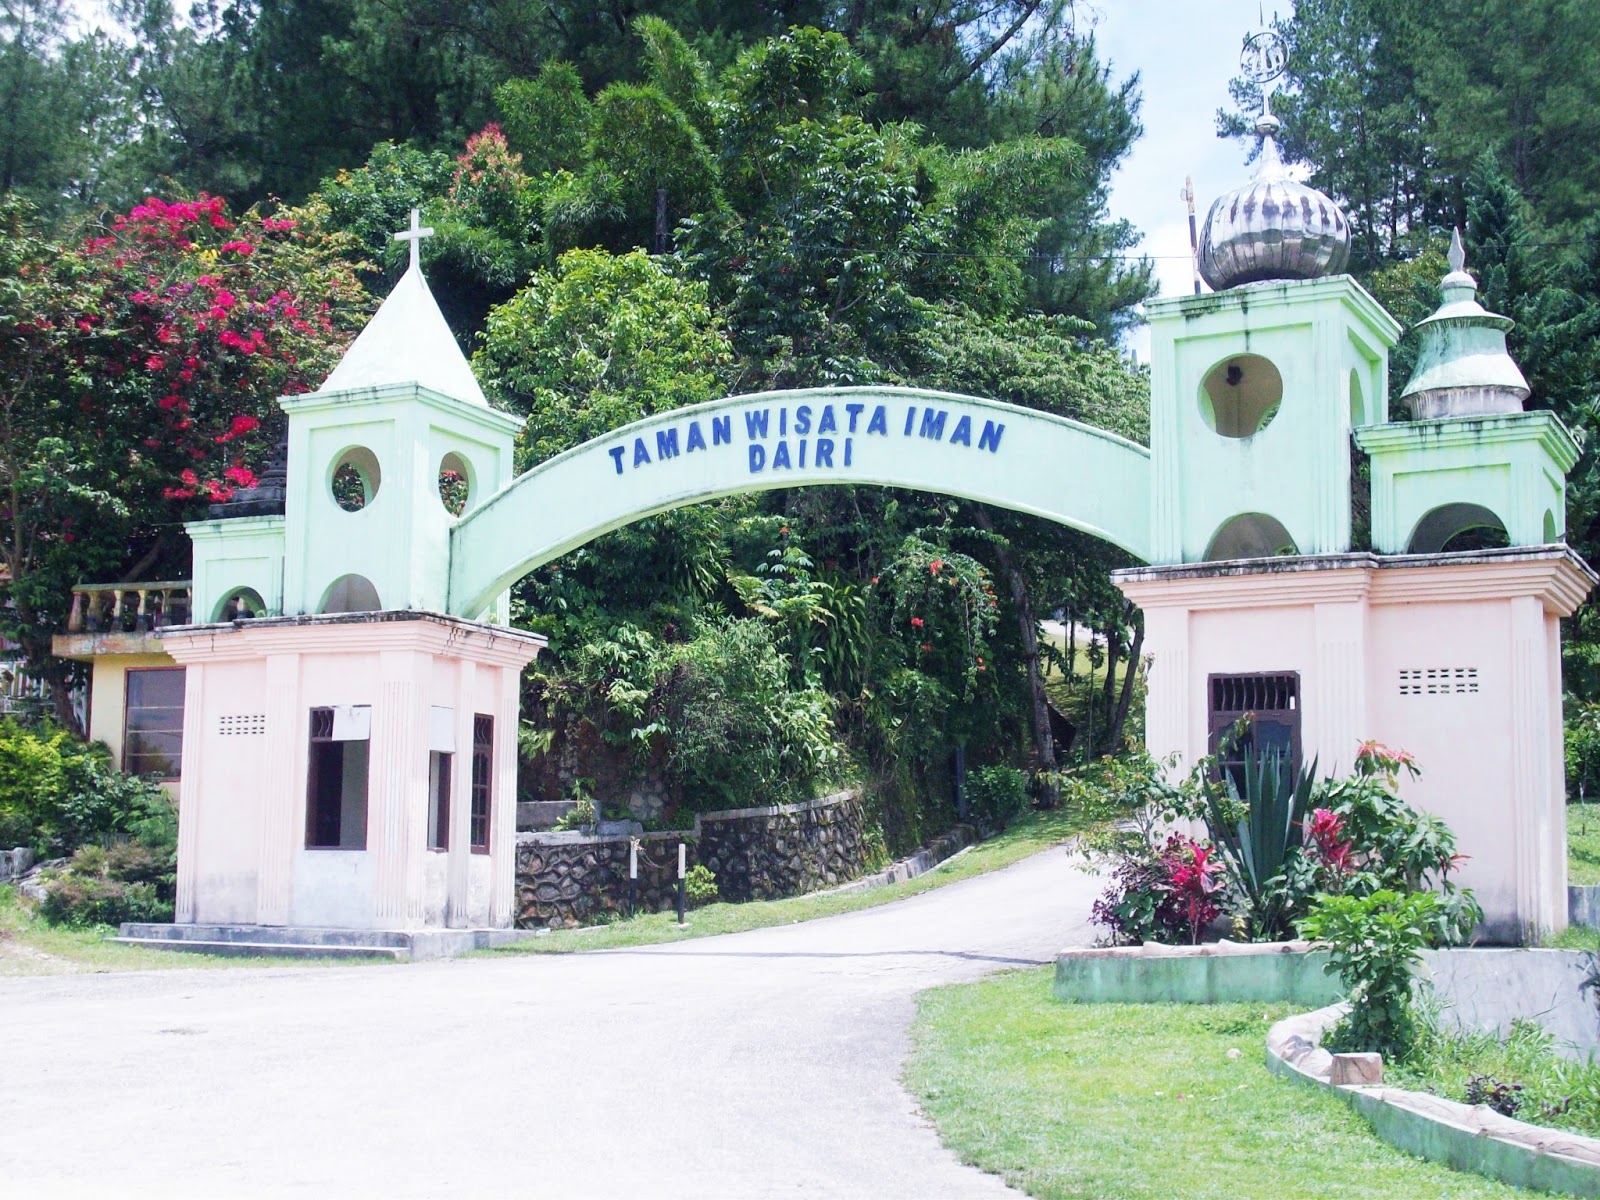 Masjid Taman Wisata Iman